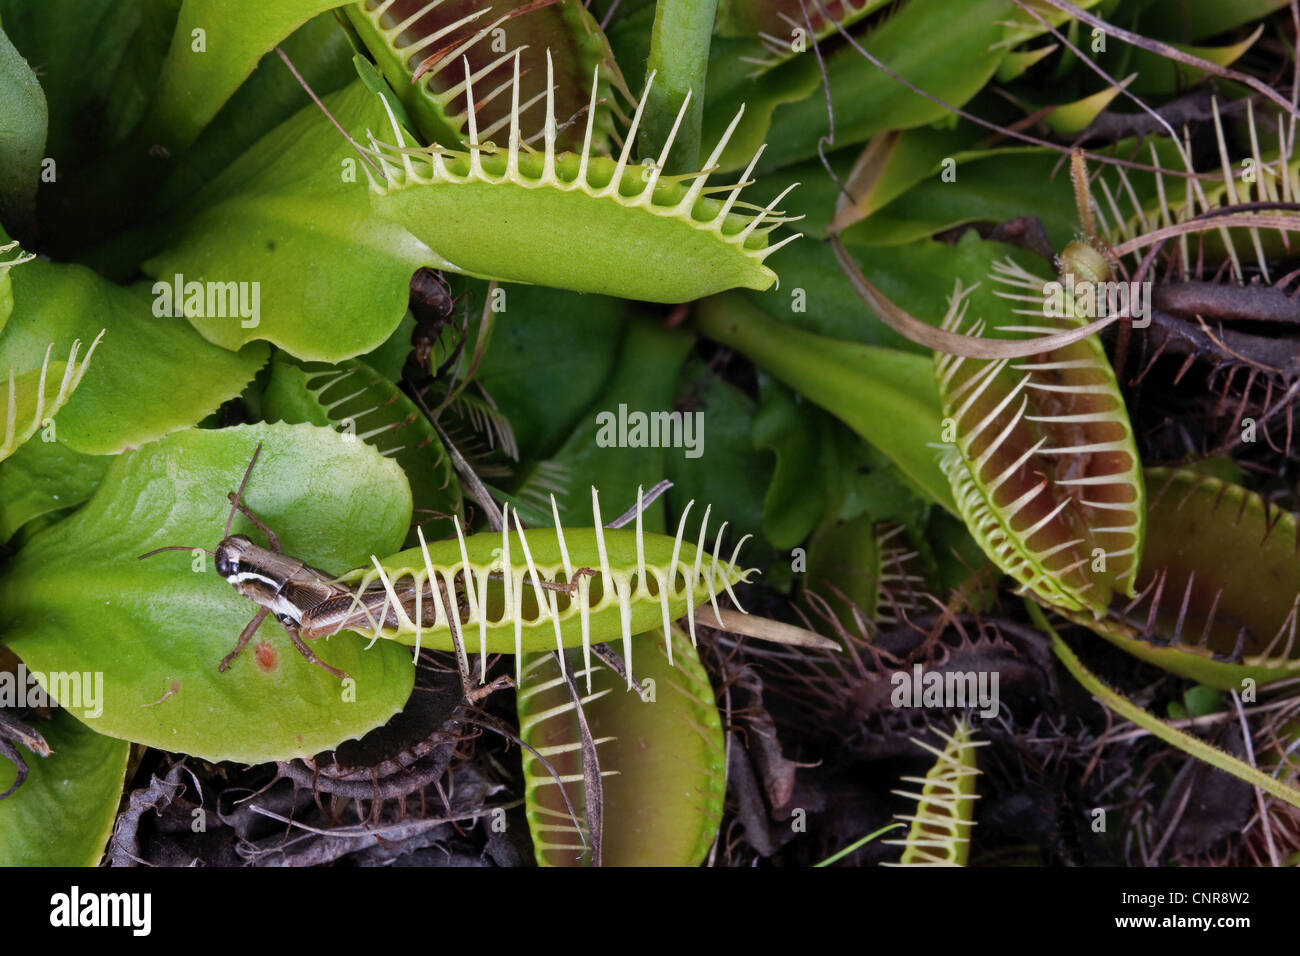 Heuschrecke in Venusfliegenfalle Blatt Dionaea Muscipula südöstlichen USA fotografiert in Natur gefangen Stockfoto